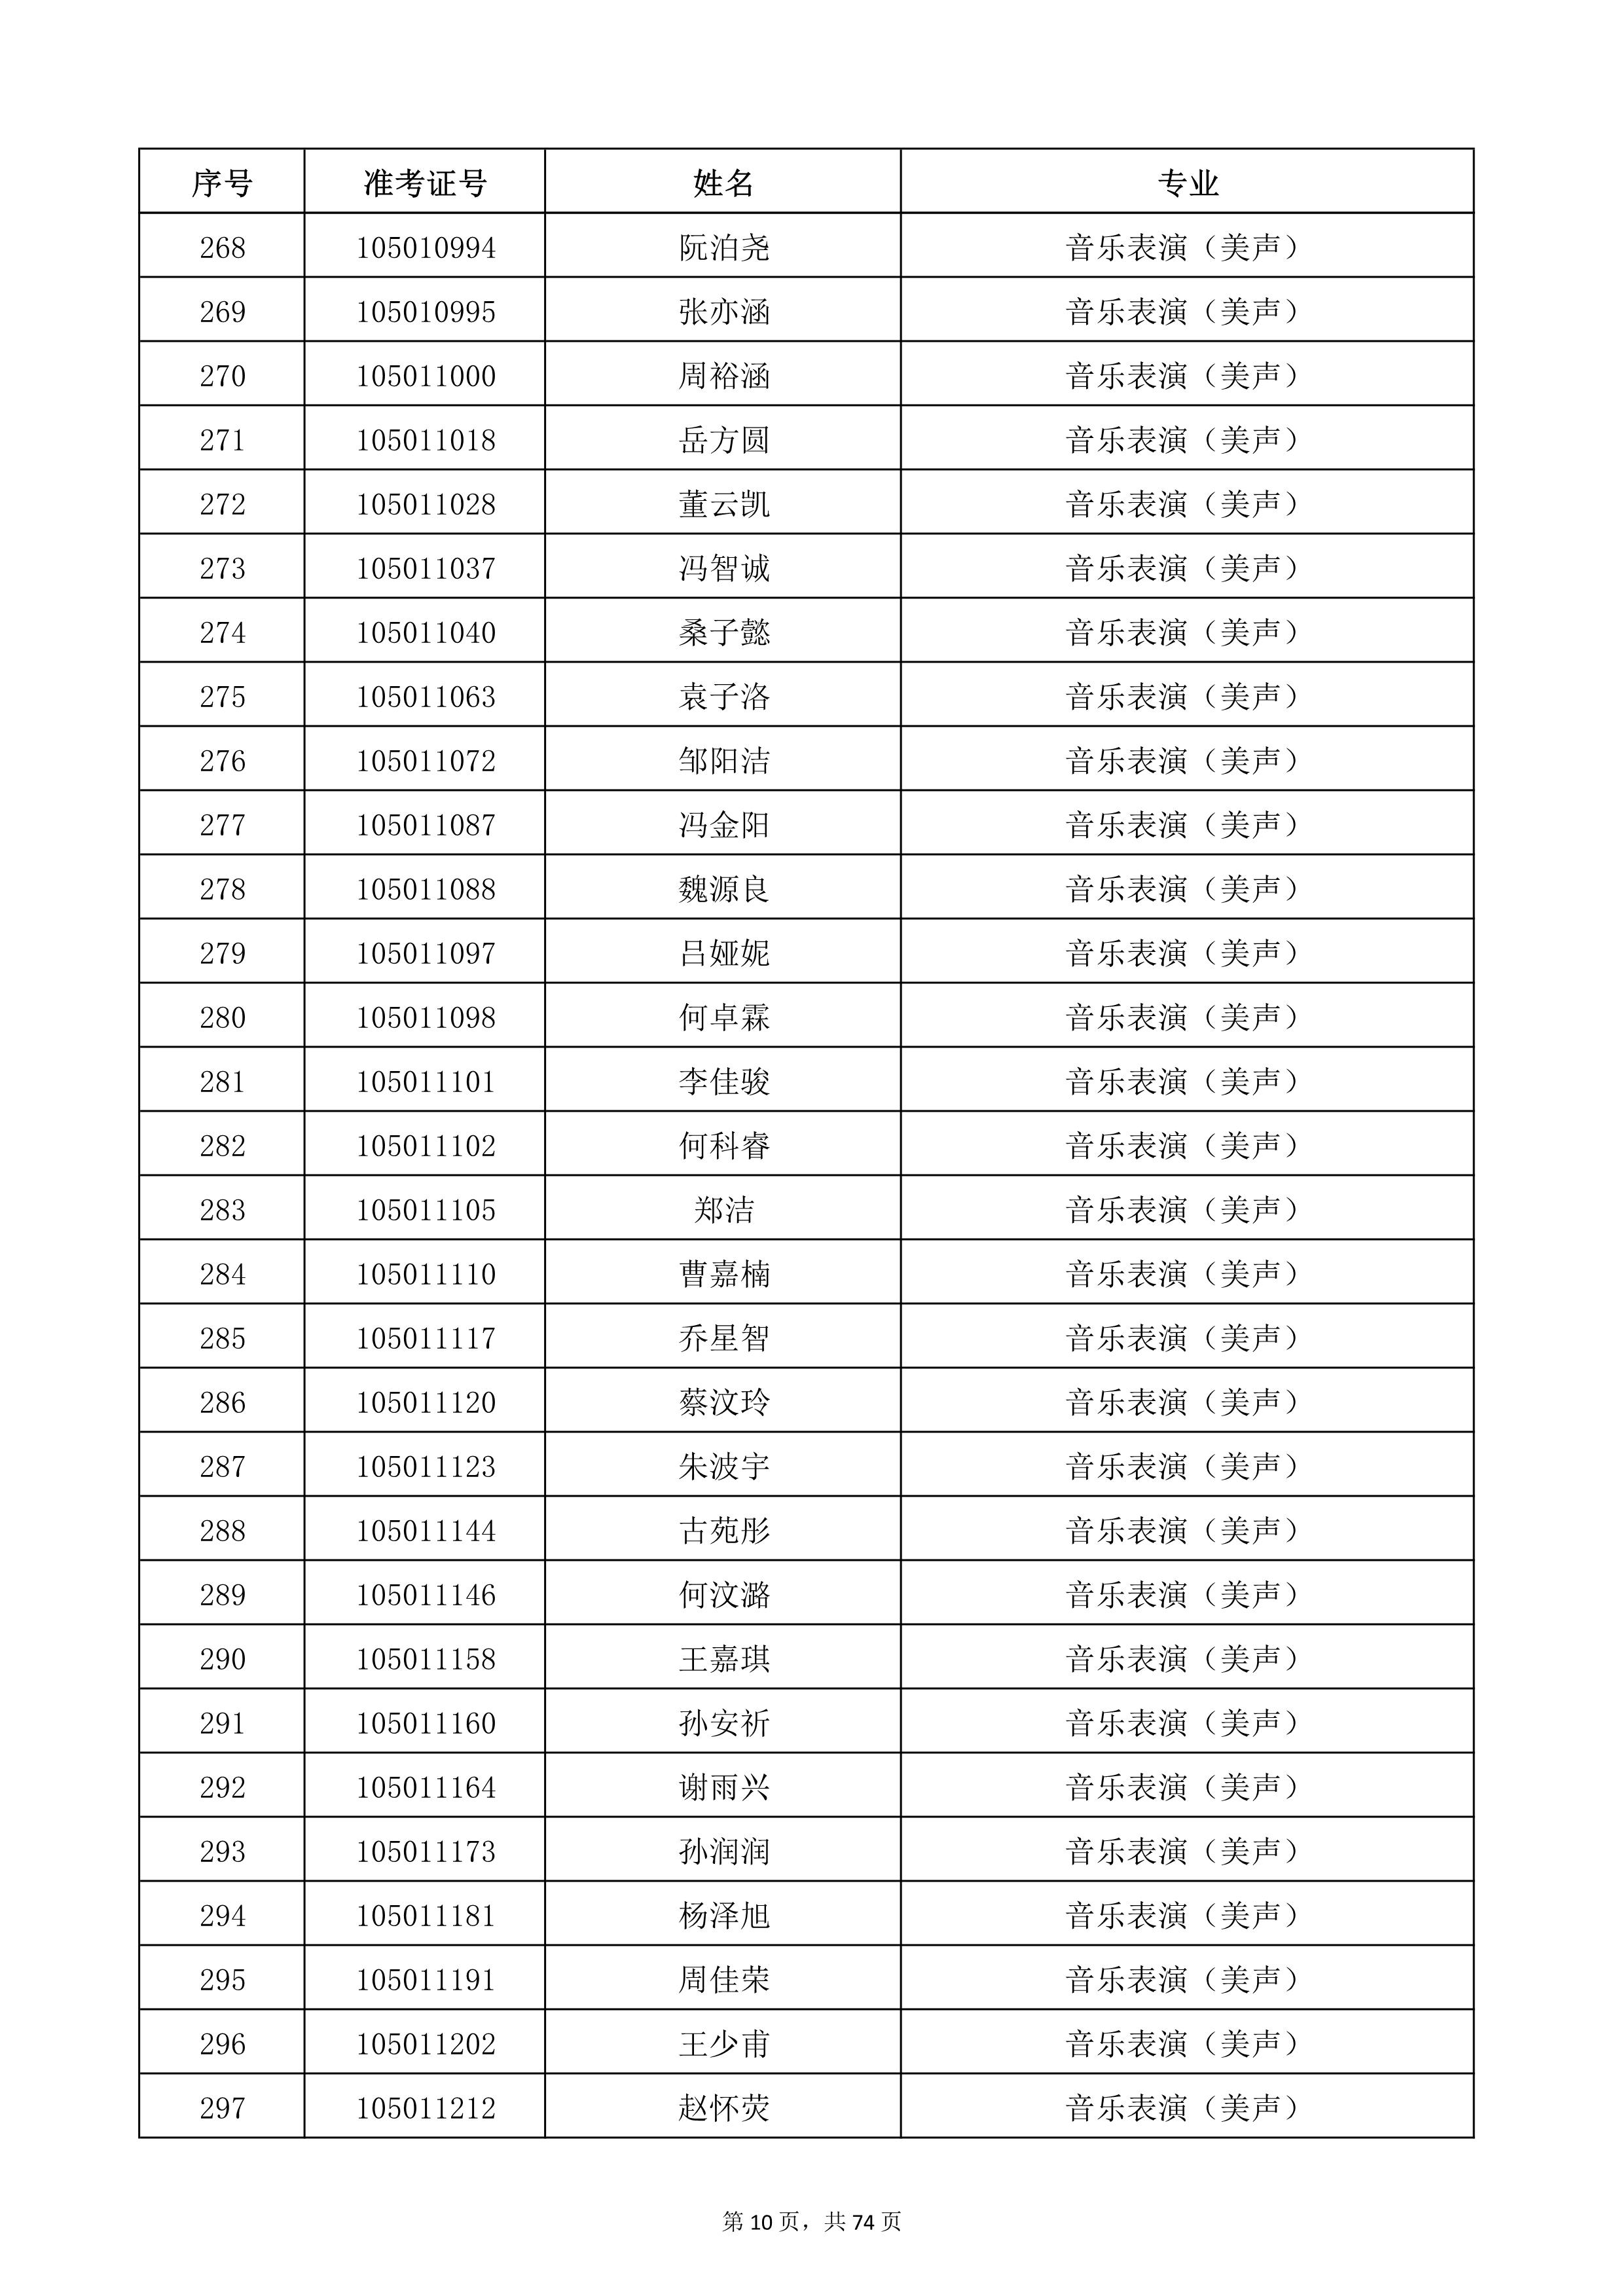 天津音乐学院2022年本科招生考试复试名单_10.jpg